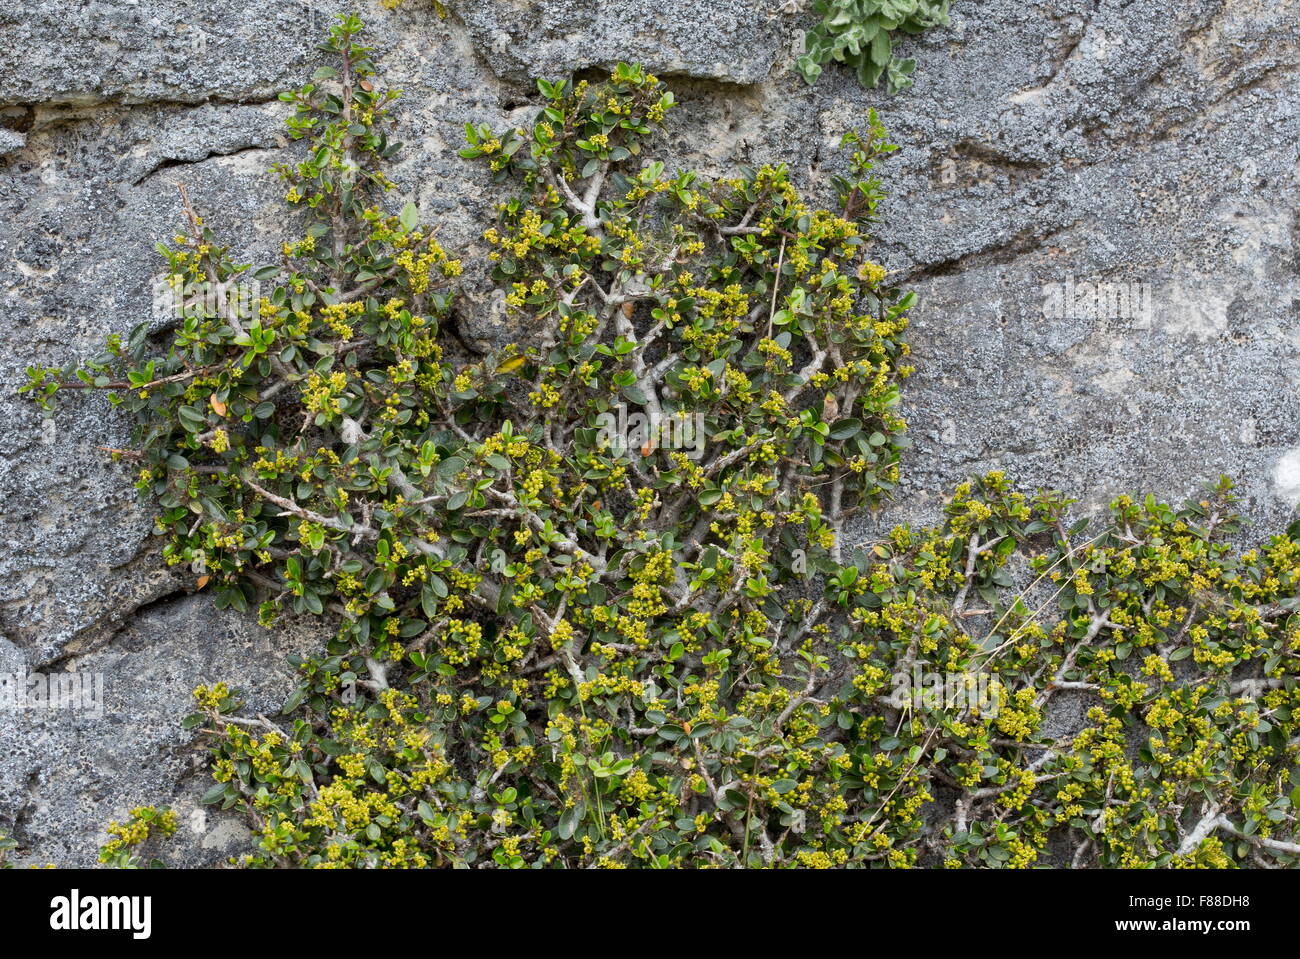 A prostrate buckthorn, on cliff face: Rhamnus alaternus ssp myrtifolius, in flower. Sierra de las nieves, Spain Stock Photo